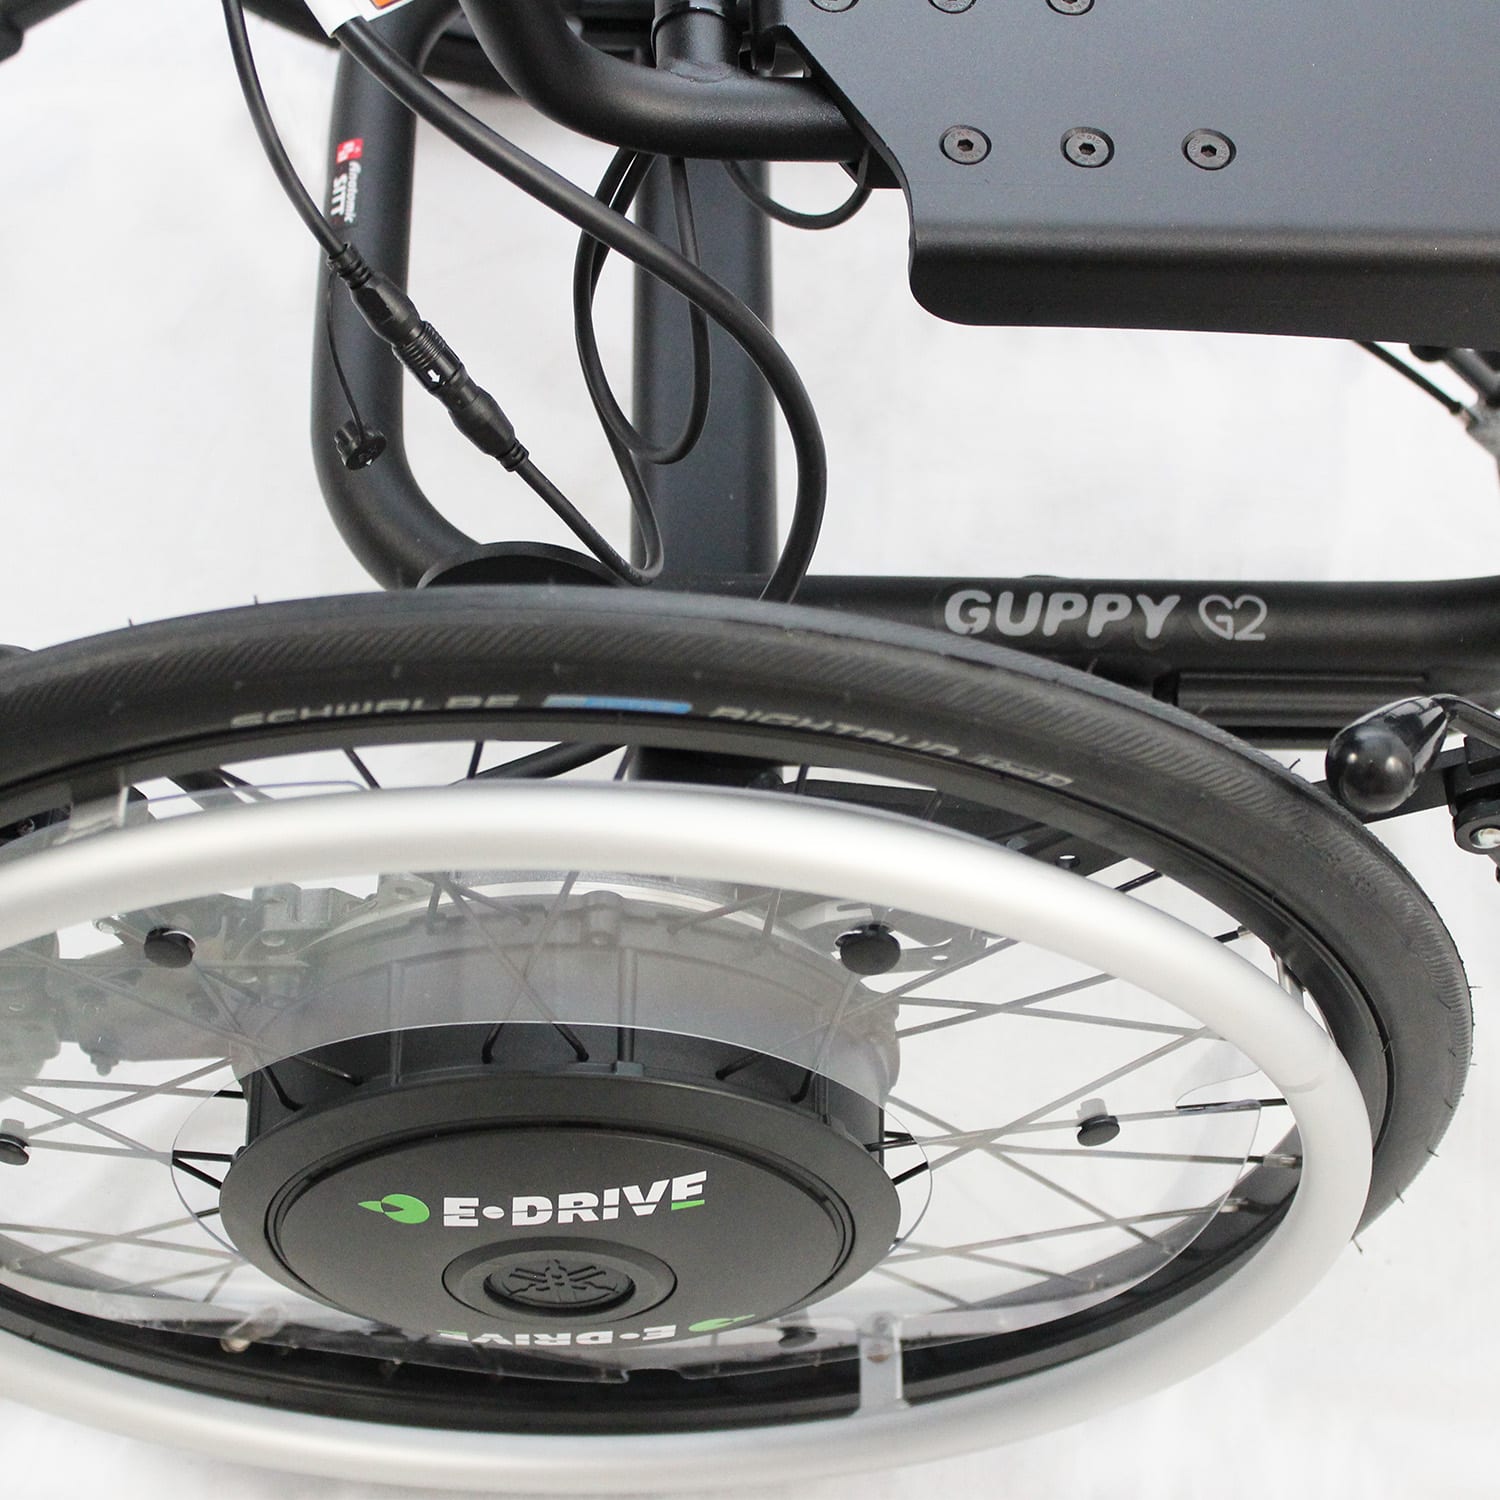 Guppy hjul med e-drive